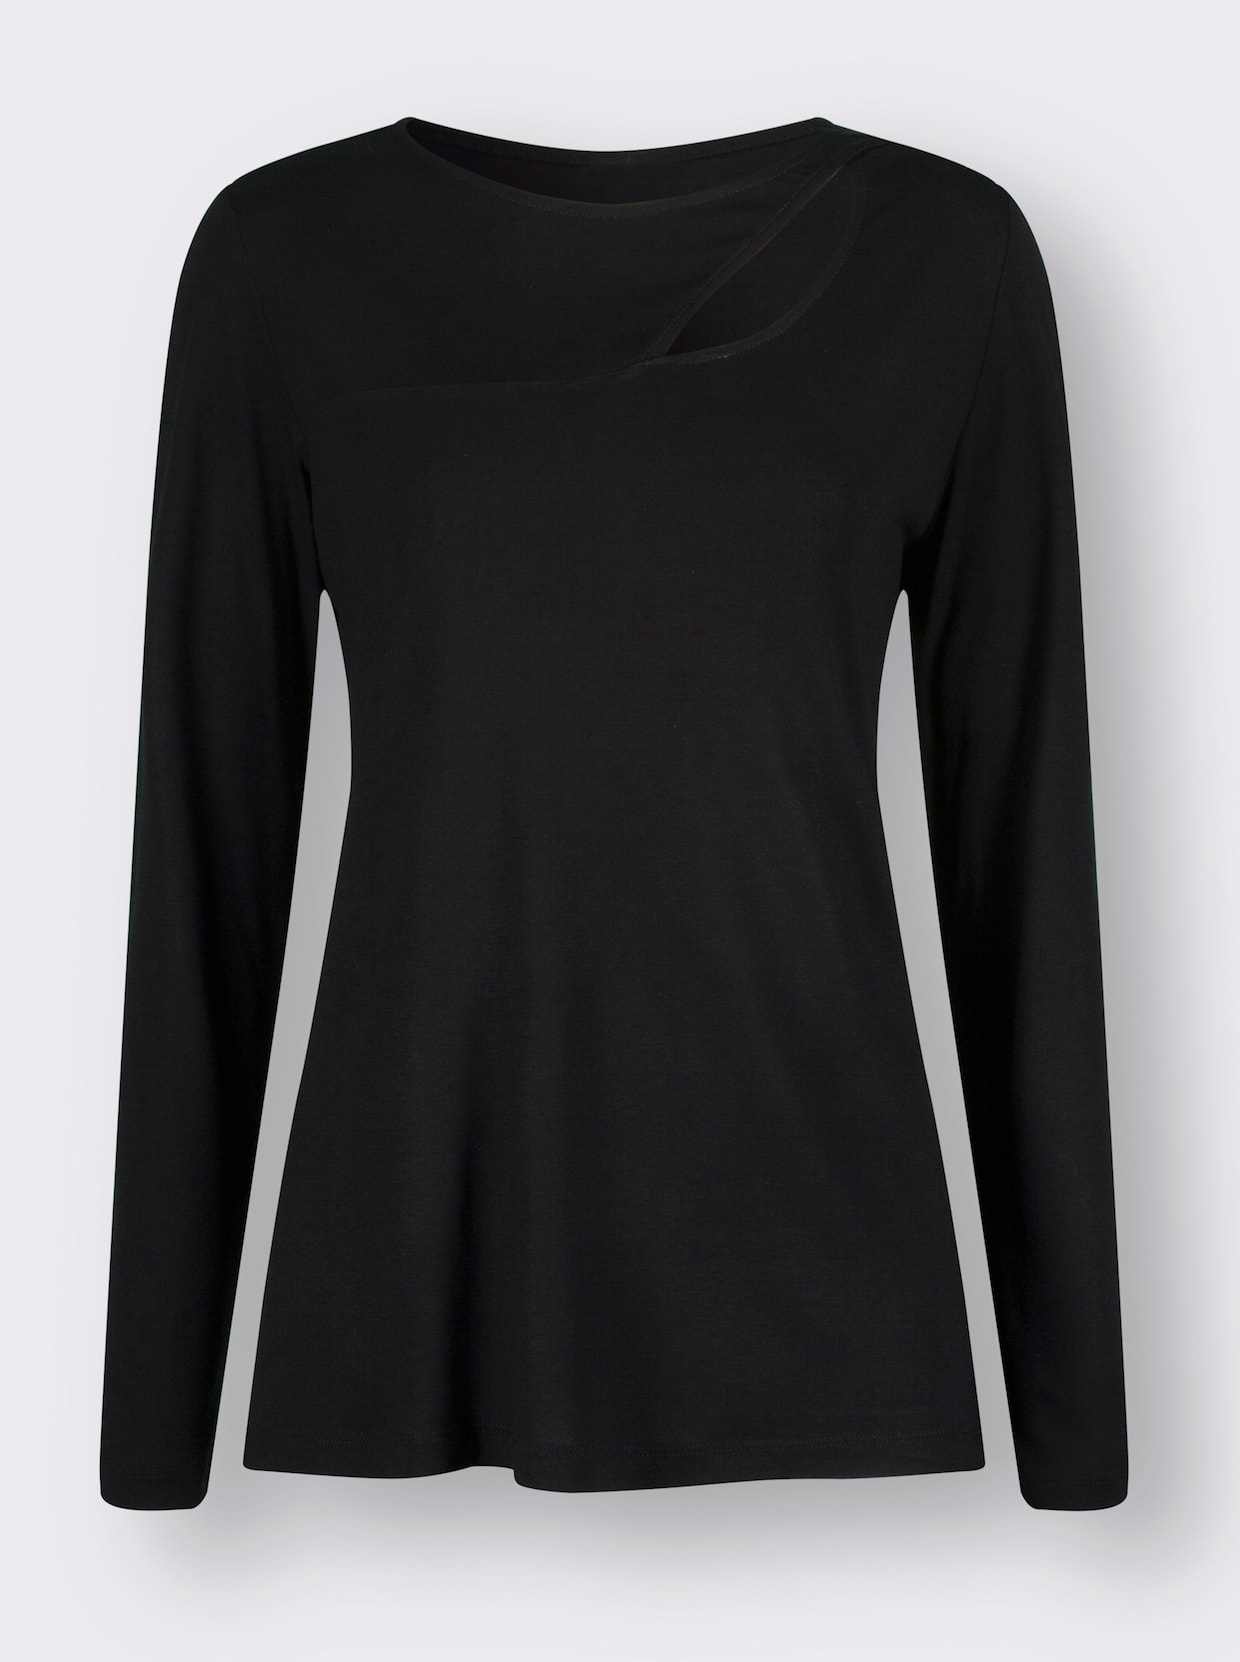 Langarm-Shirt - schwarz